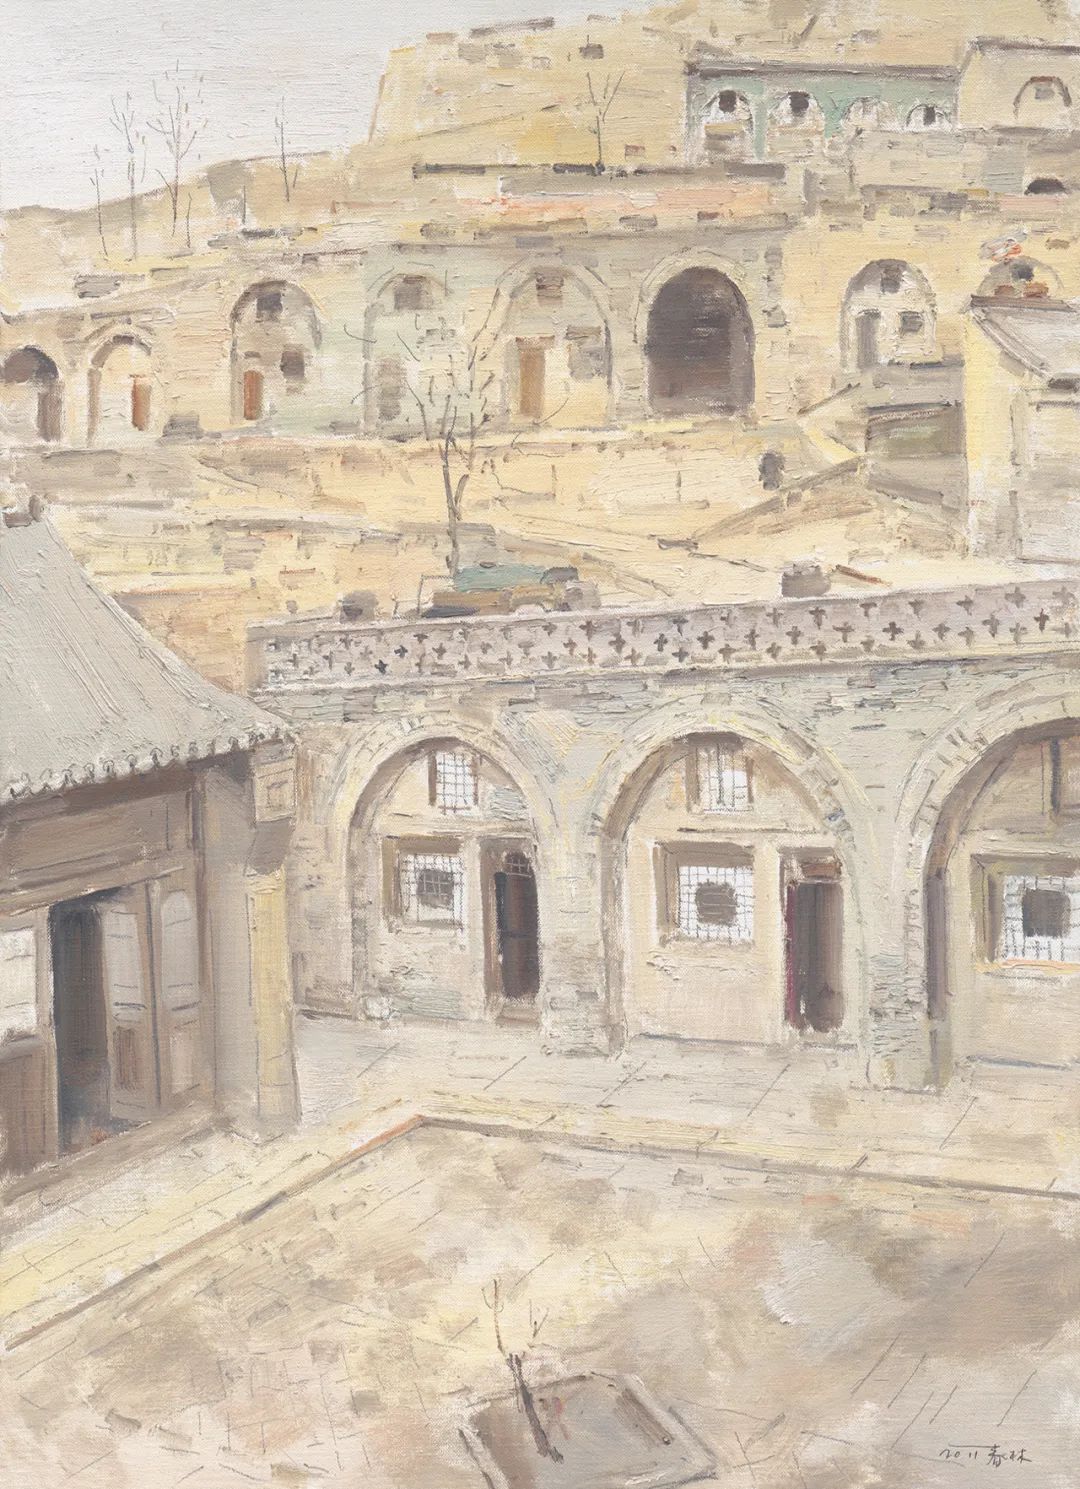 “光阴的故事——朱春林油画作品展”将于8月12日在大连开展